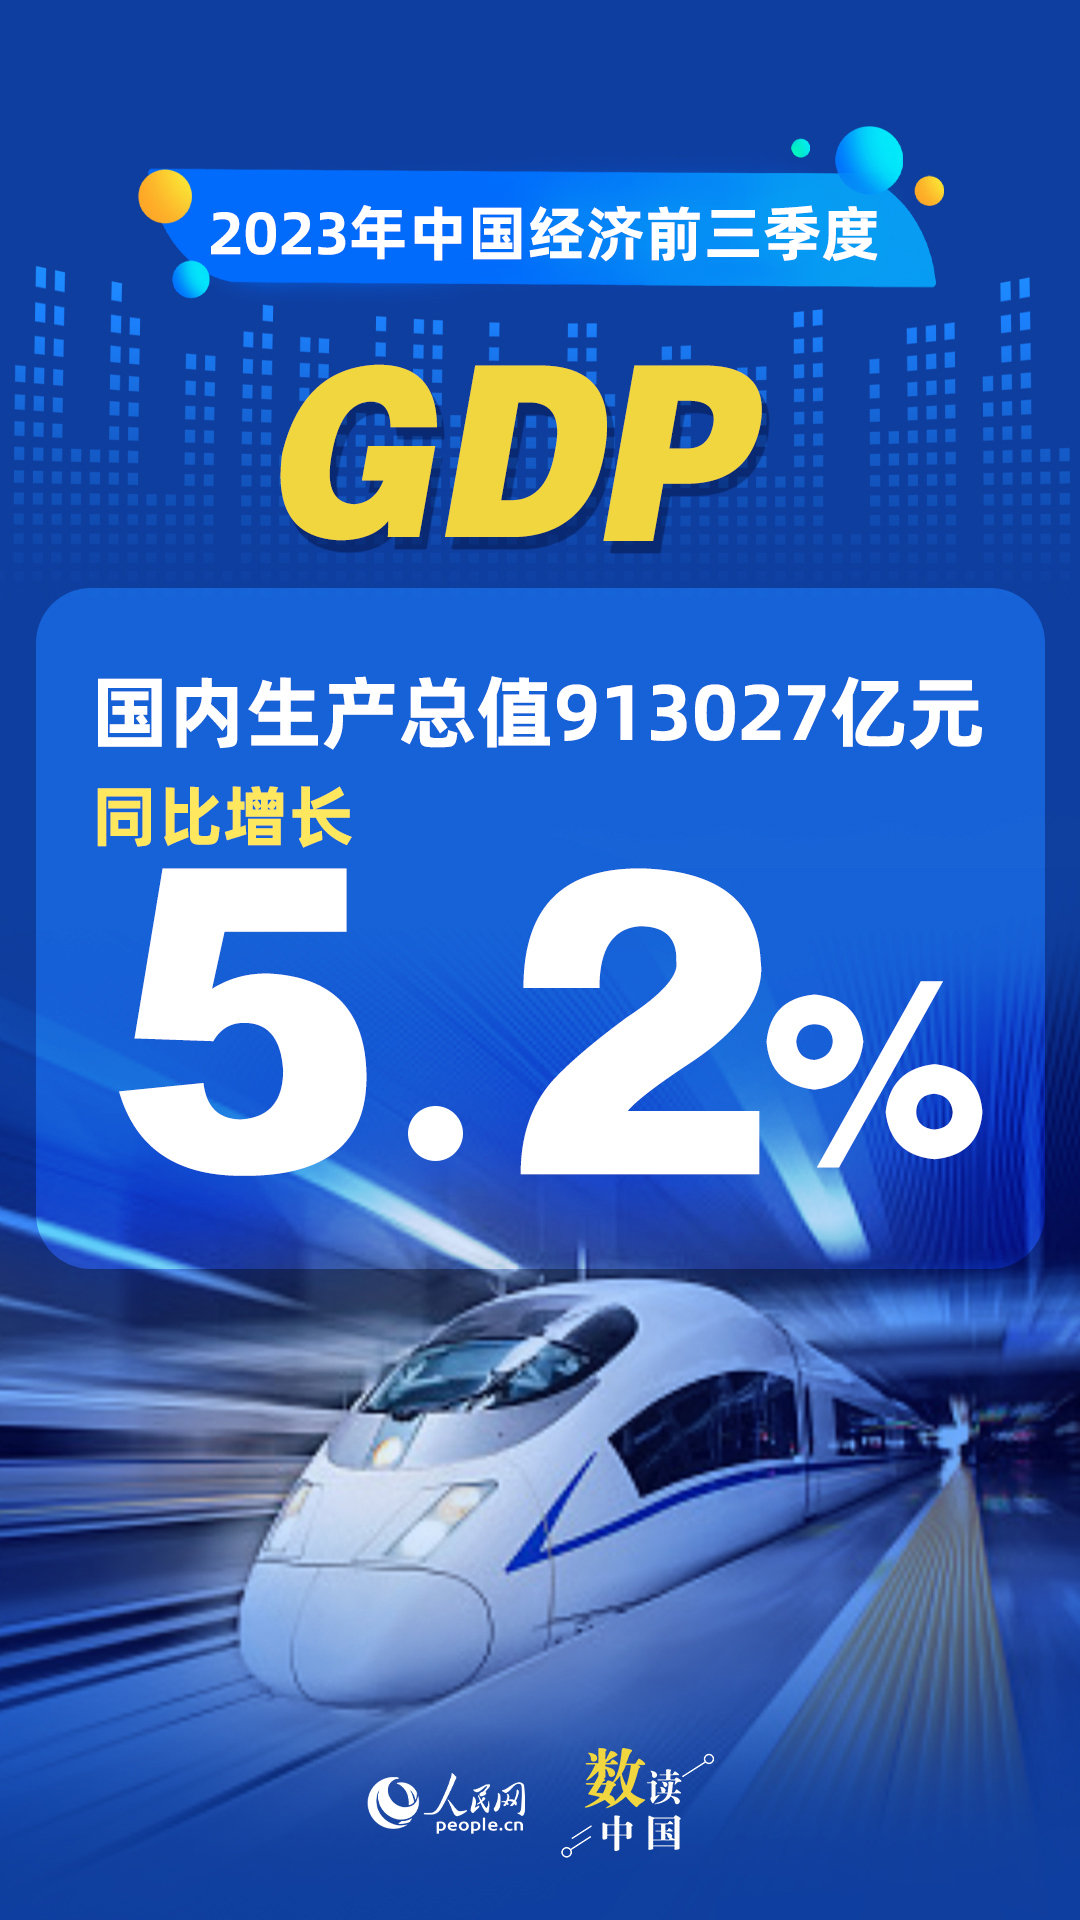 數讀中國 | 前三季度國民經濟持續恢復向好 積極因素累積增多